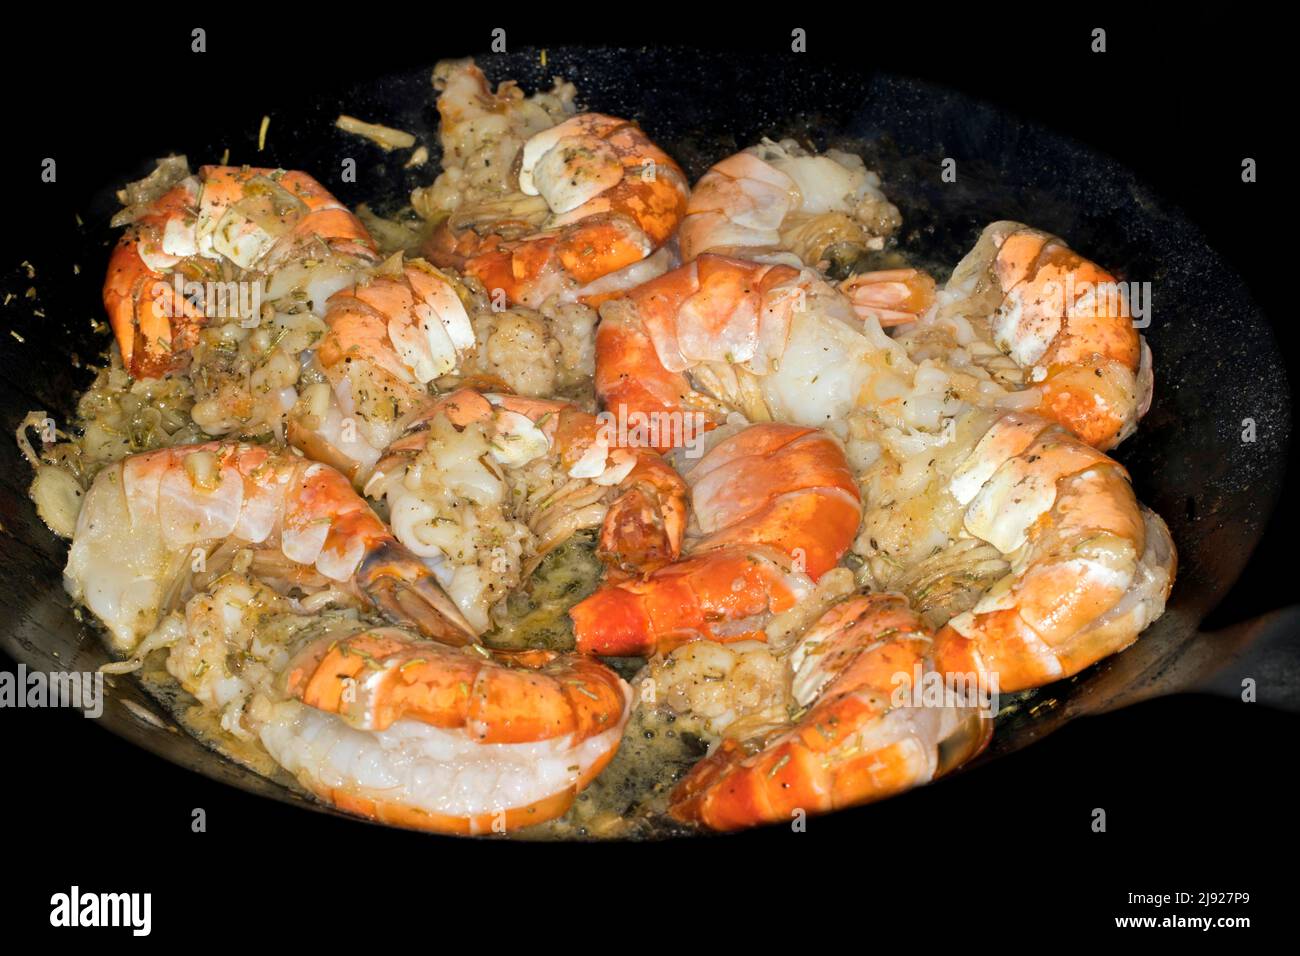 Crevettes géantes (Macrobrachium rosenbergii) frites dans une casserole de fer, Indo-Pacific Banque D'Images